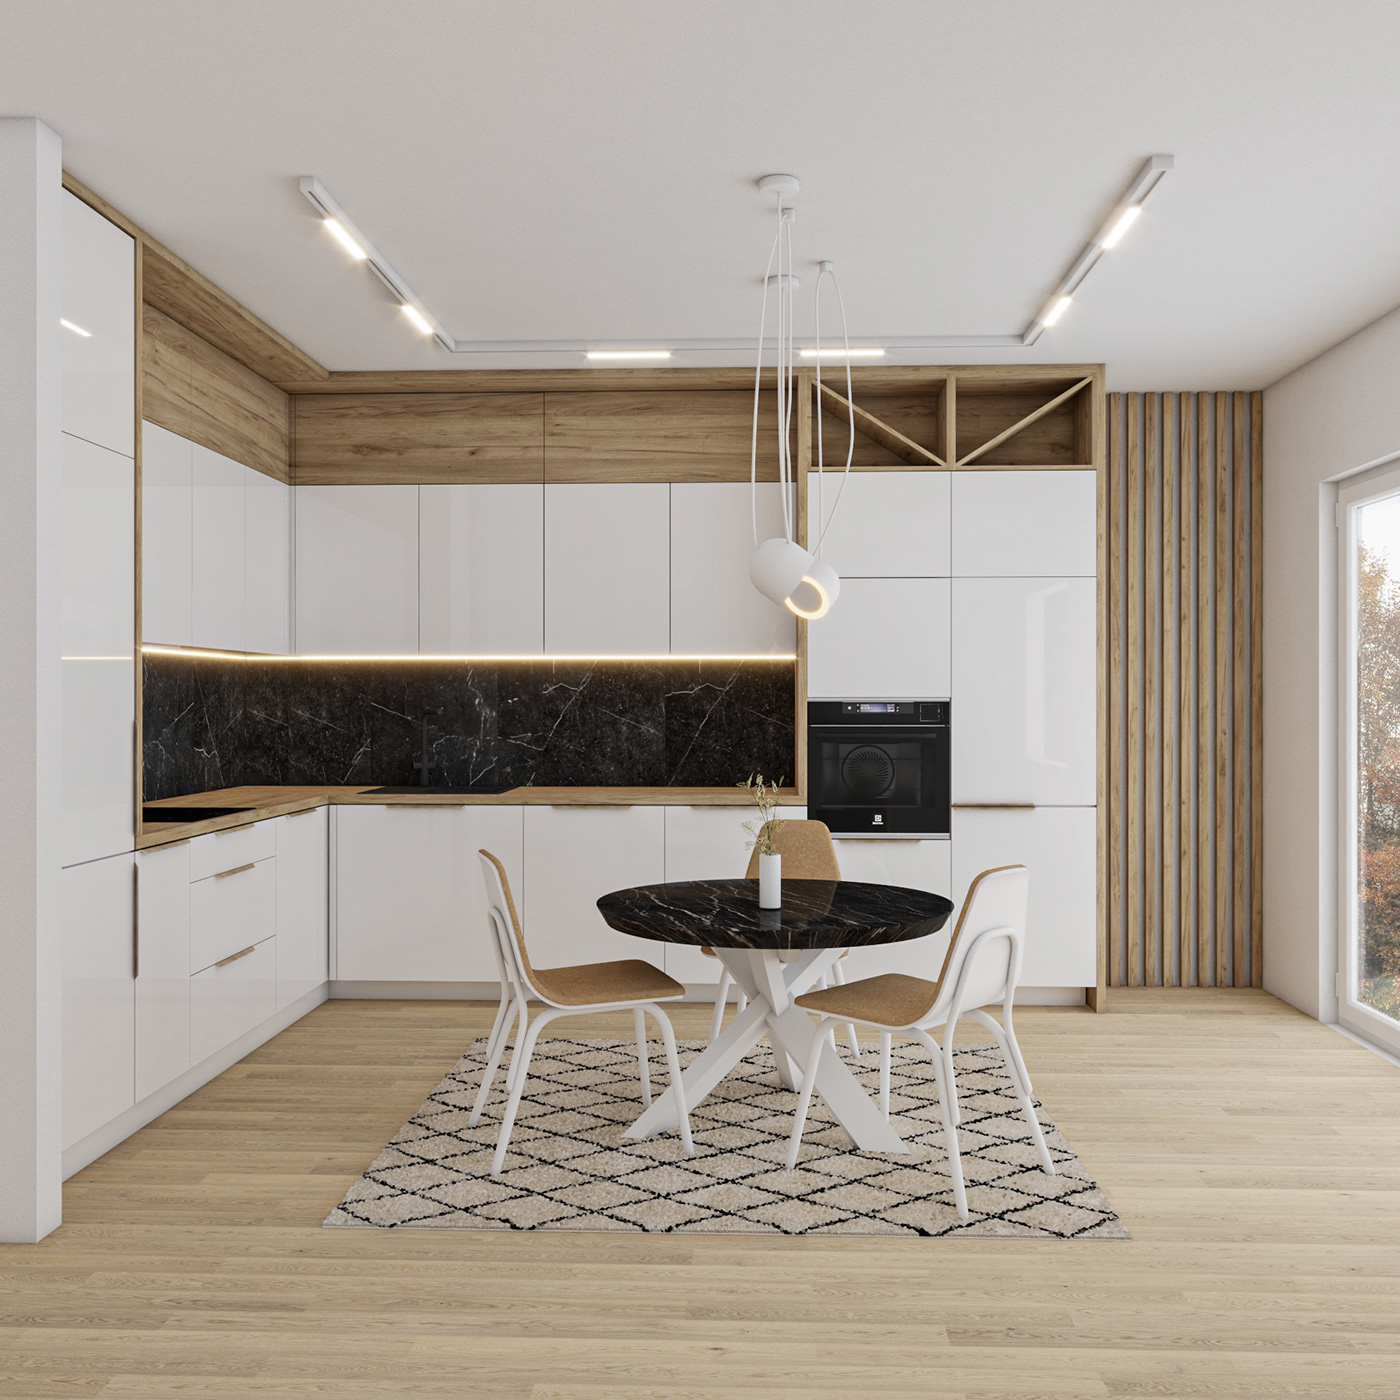 architecture interiordesign kitchen kitchendesign Render visualization vray